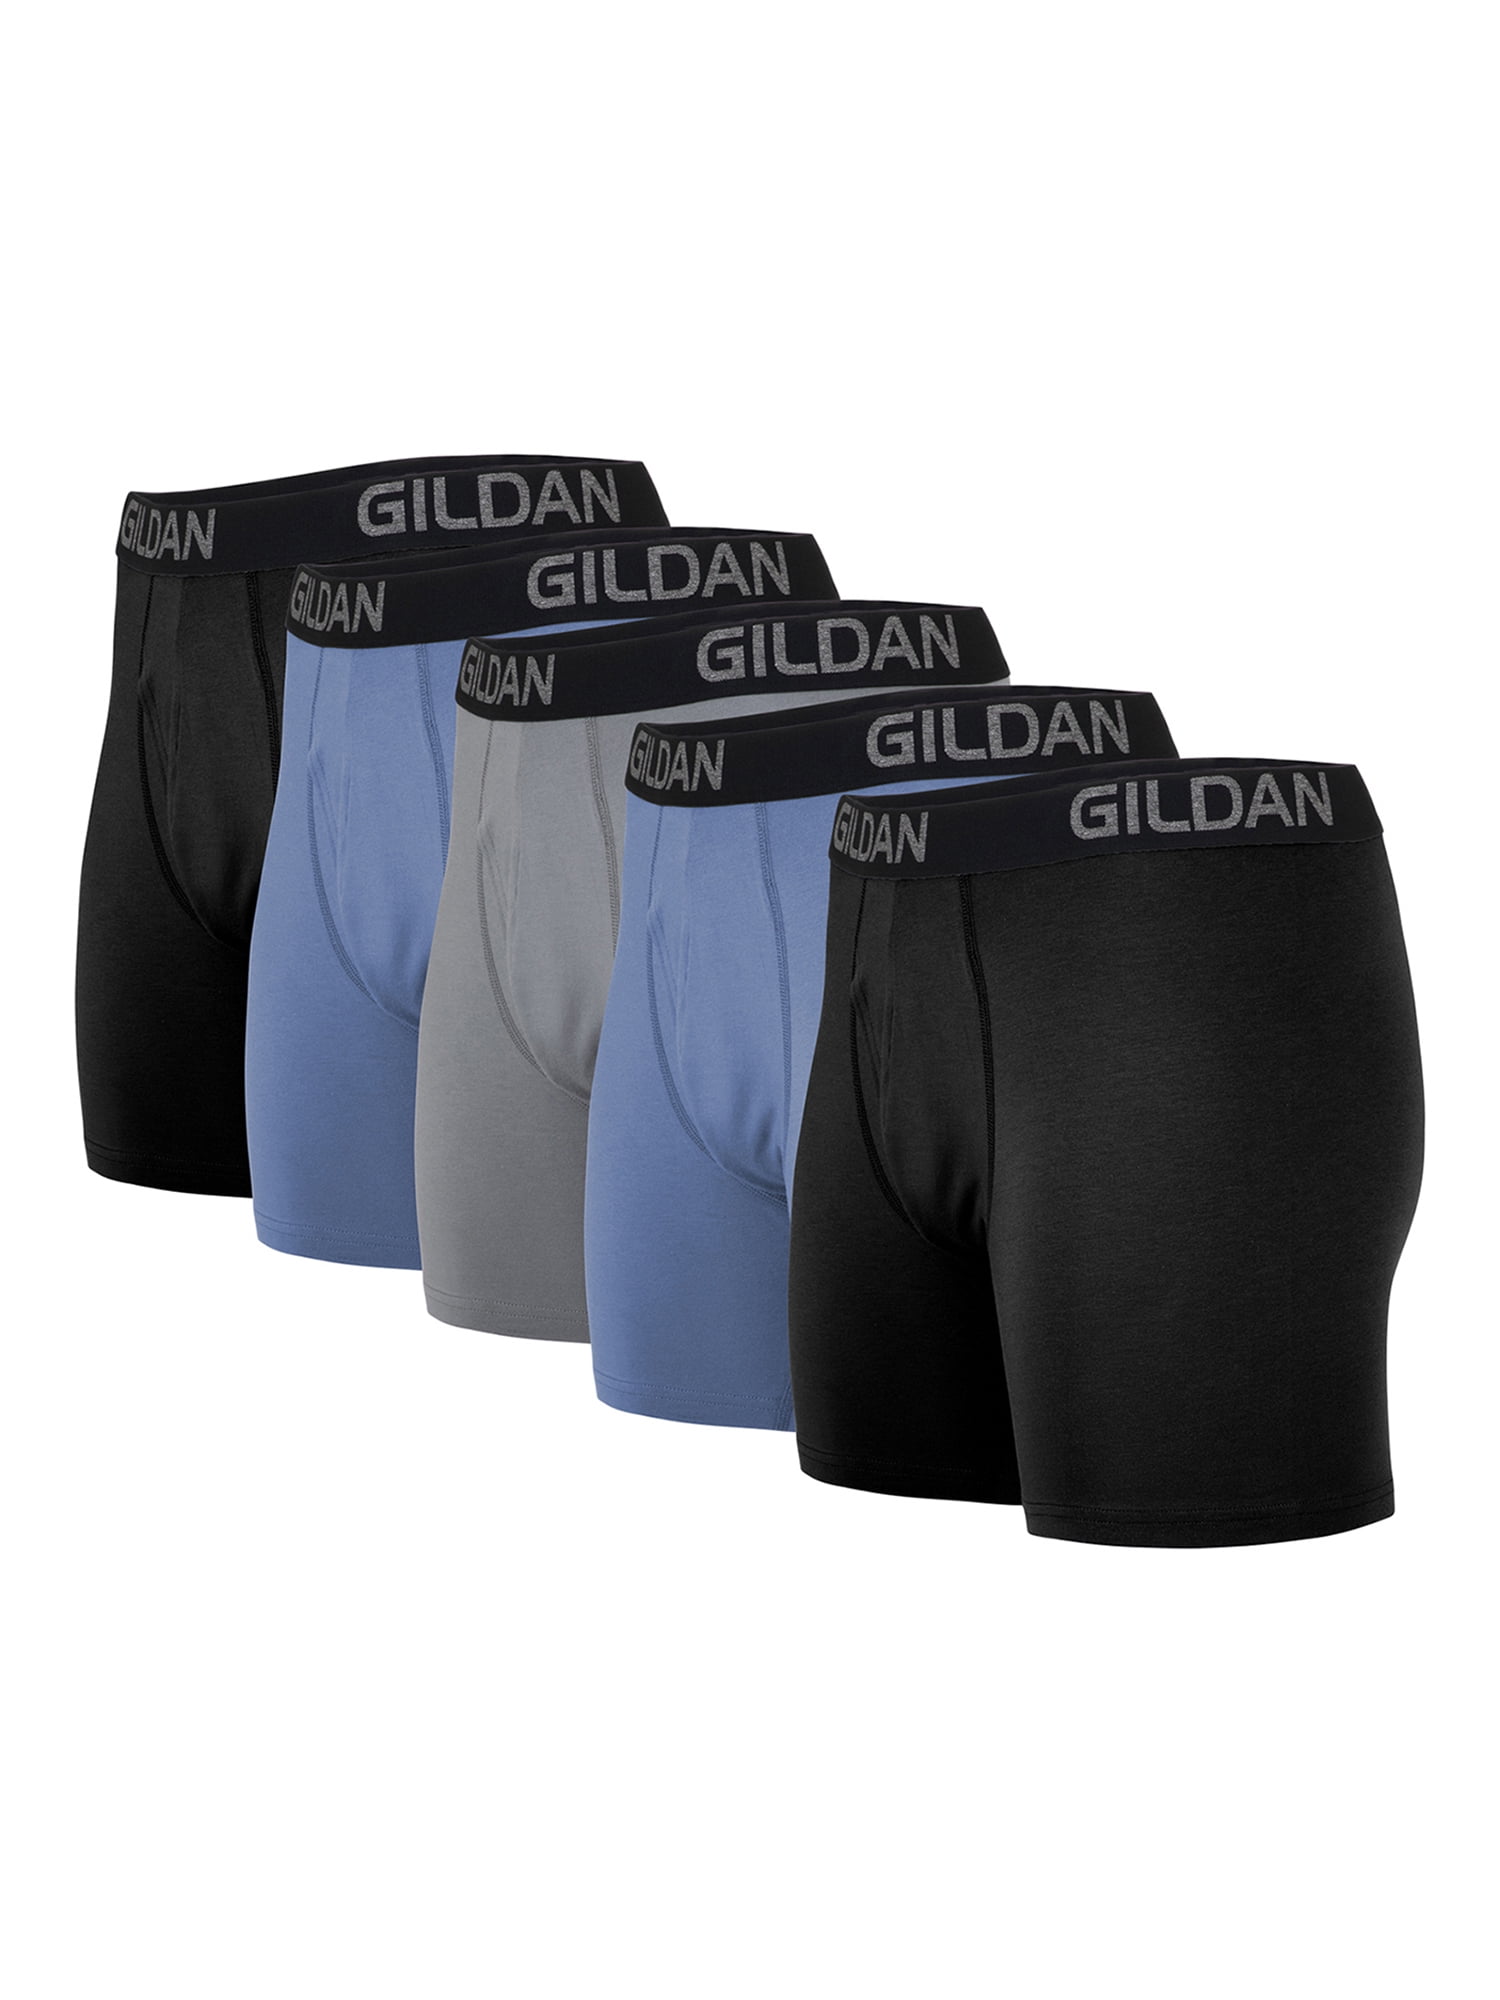 Gildan Men's Cotton Stretch Regular Leg Boxer Briefs, 5-Pack